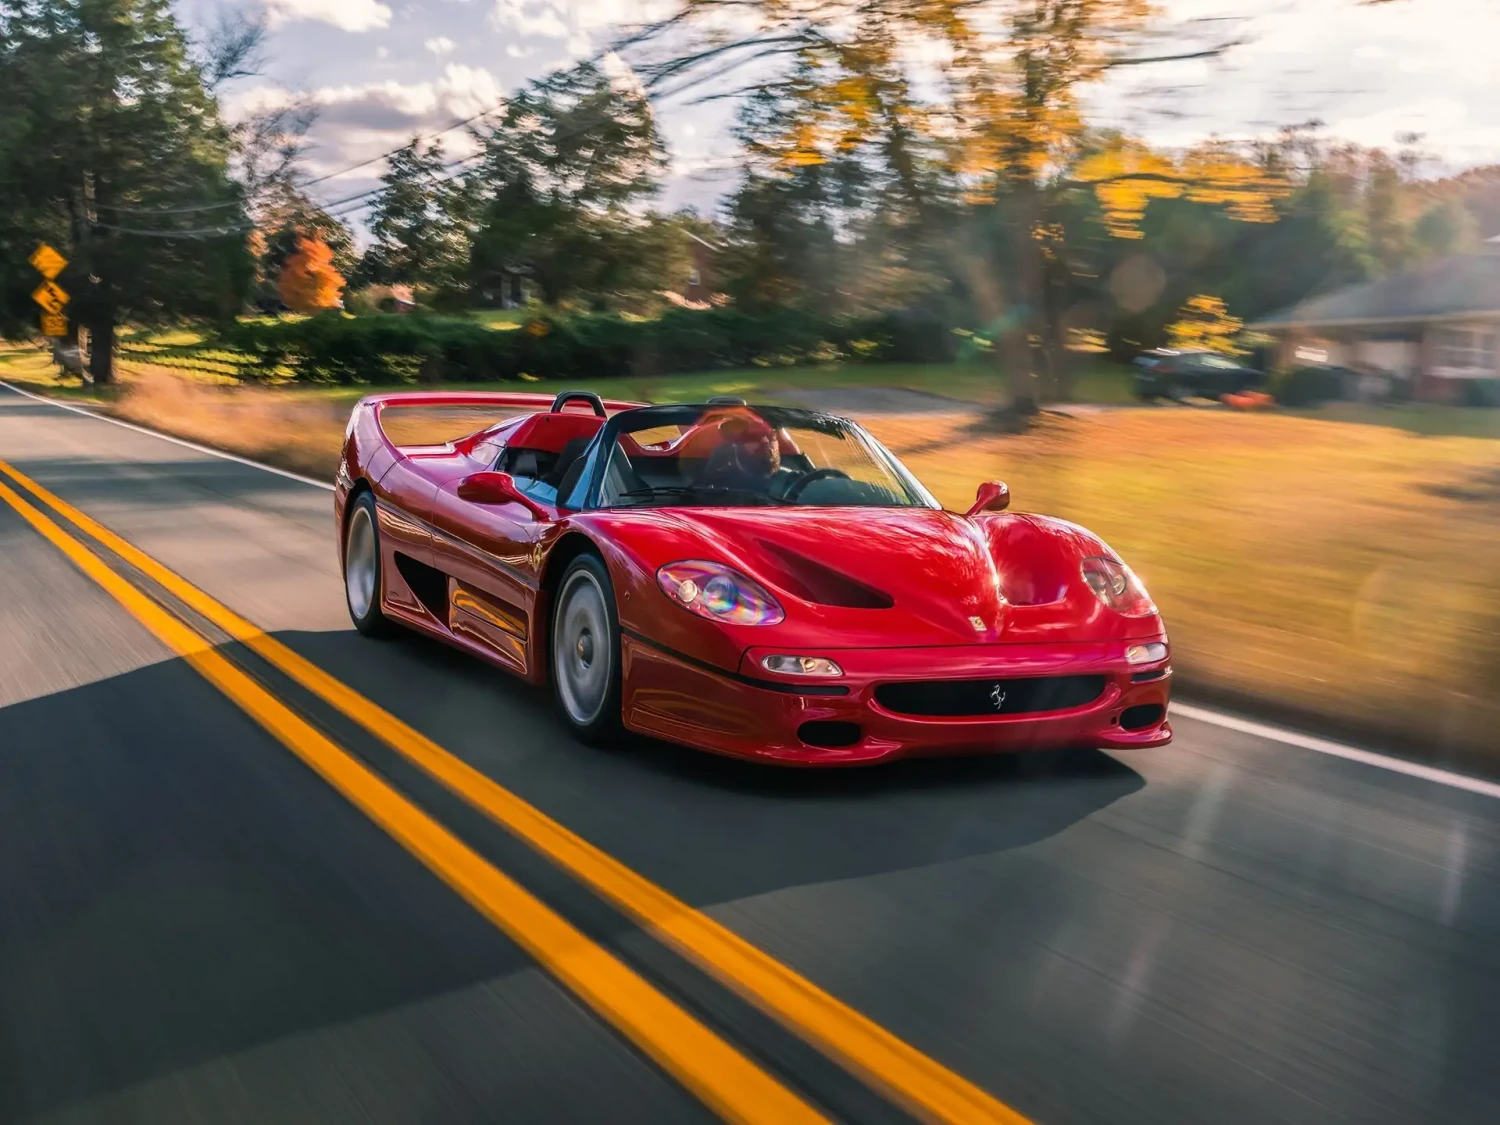 Ferrari uvede nový elektromobil. Má nabídnout stejný zážitek jako spalovací motor